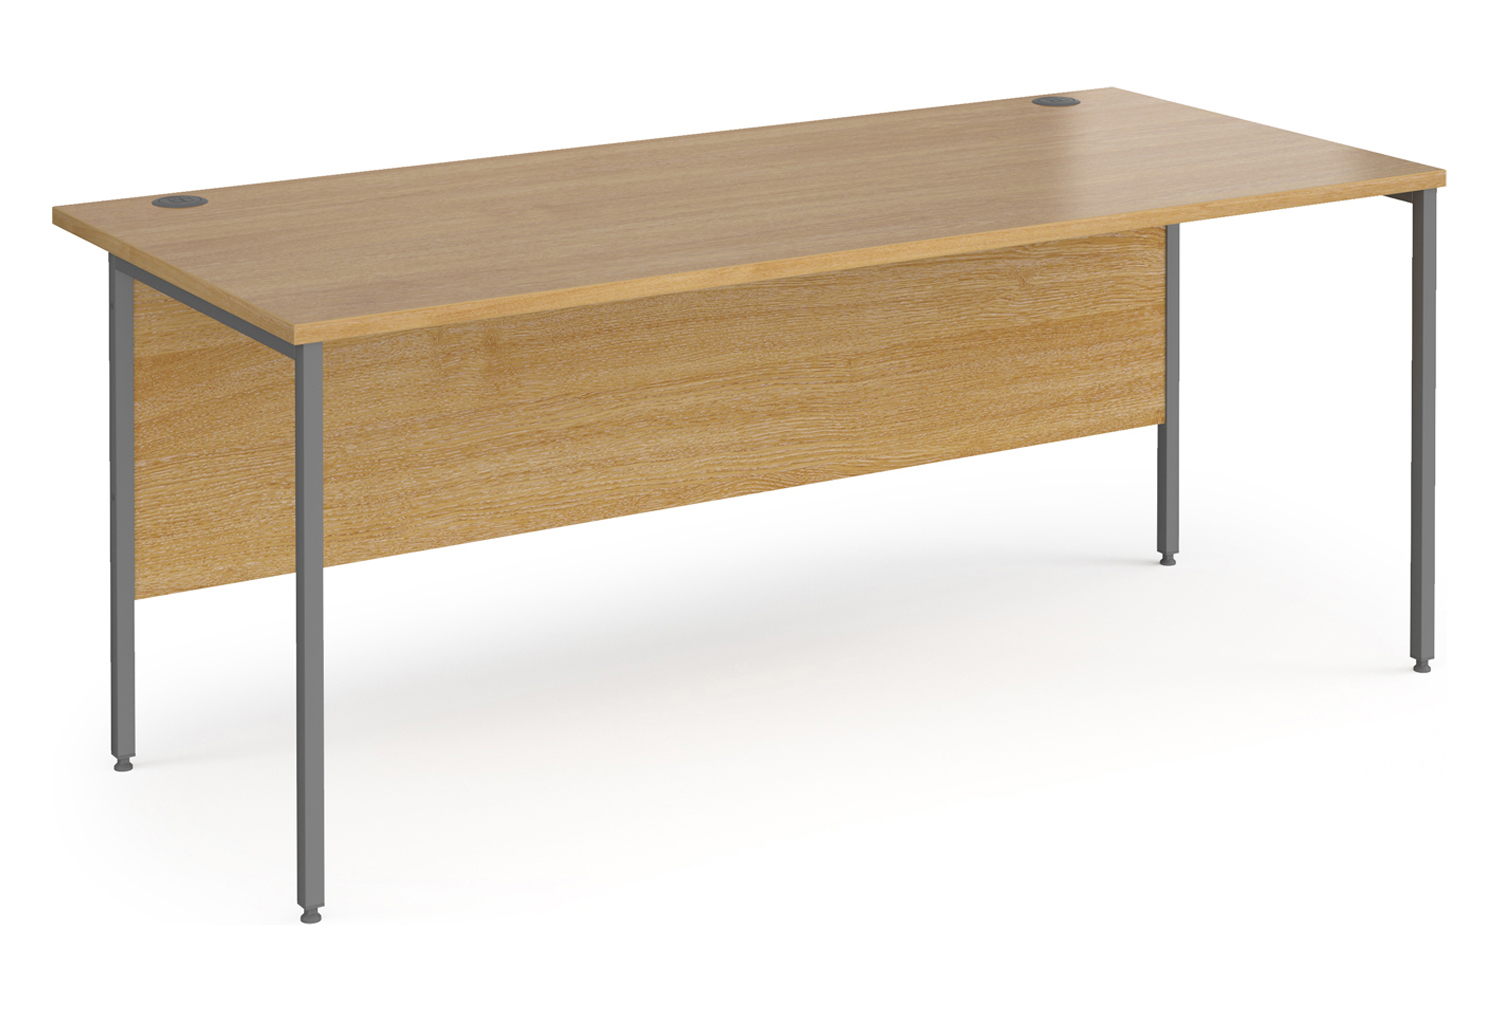 Value Line Classic+ Rectangular H-Leg Office Desk (Graphite Leg), 180wx80dx73h (cm), Oak, Express Delivery